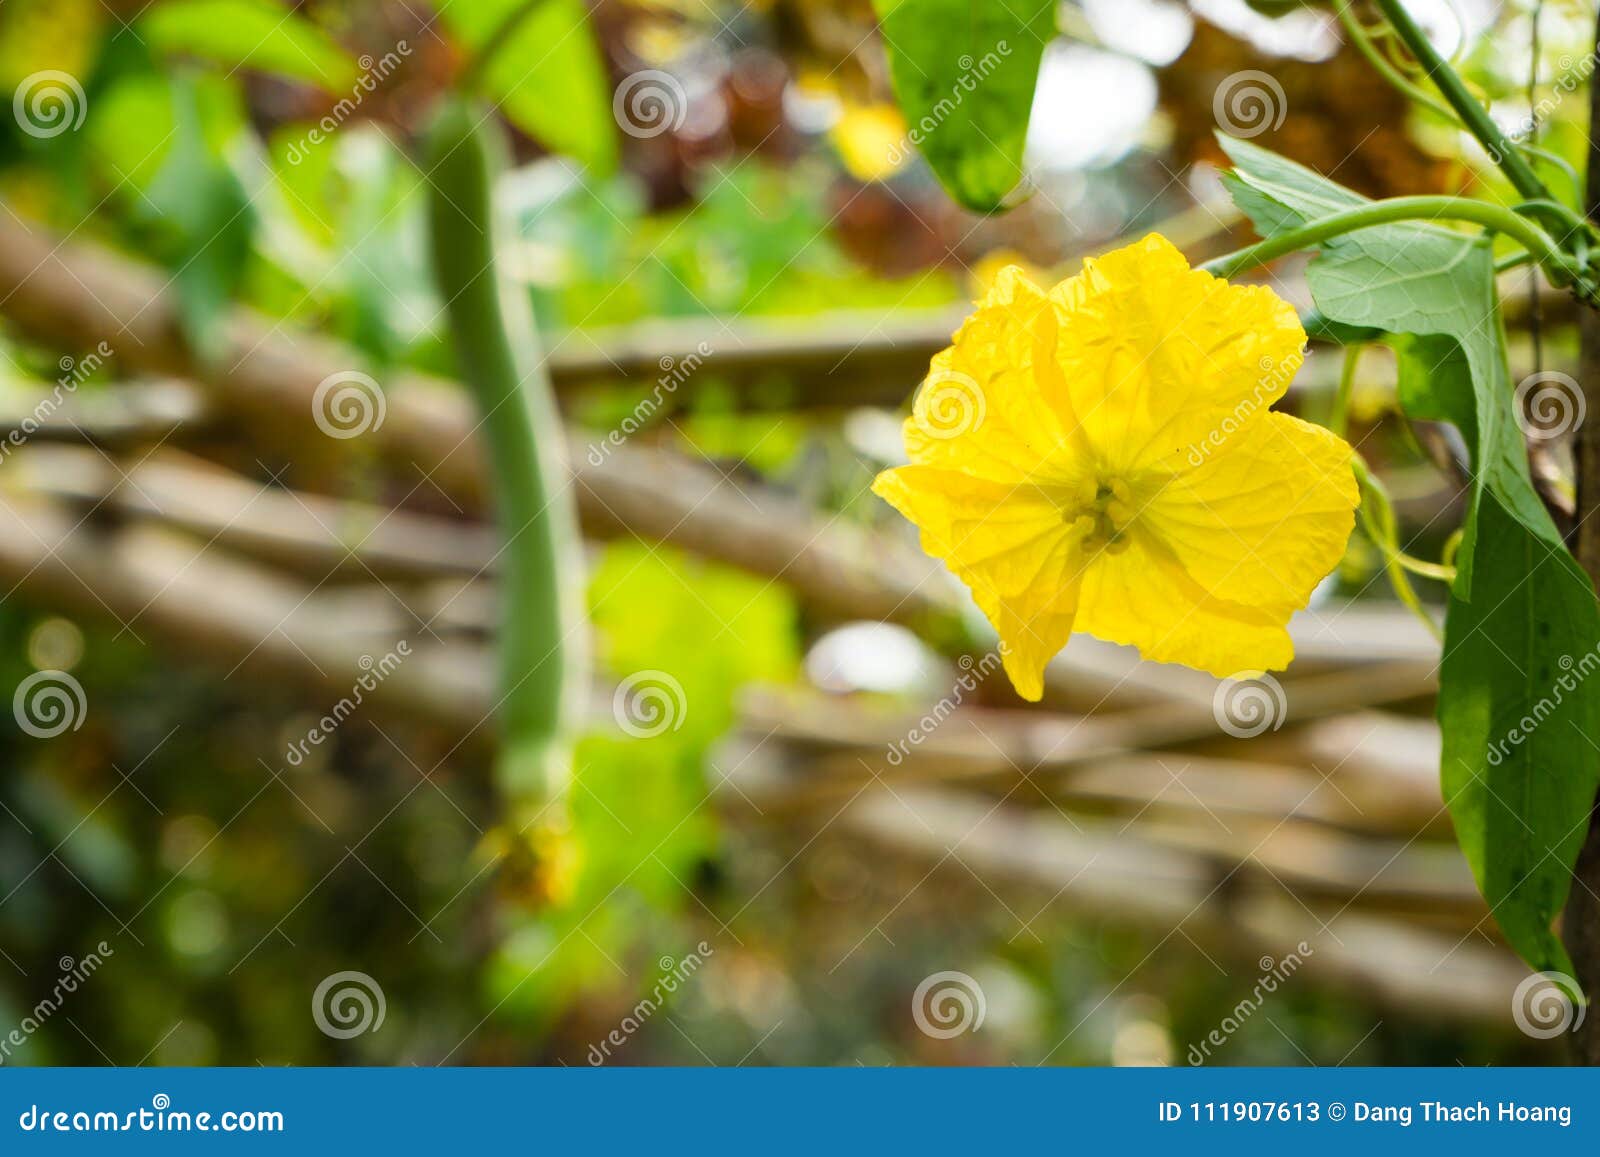 Remendo da abóbora com as flores na floresta em Vietnam